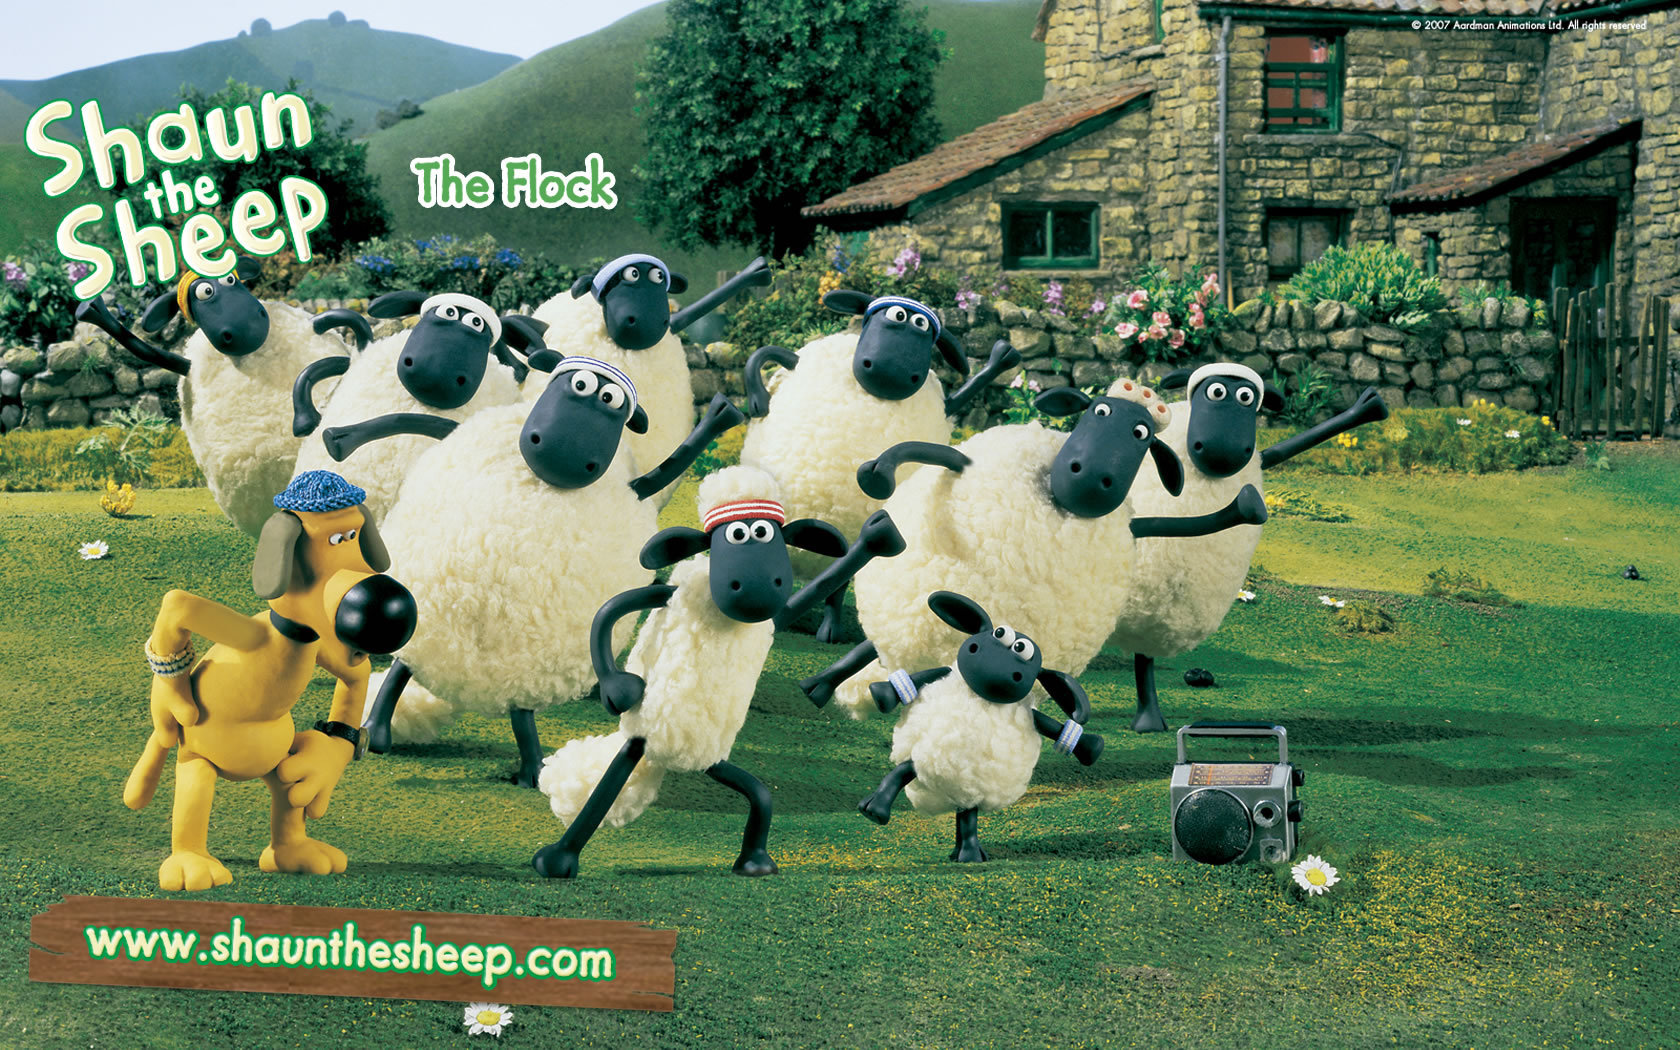 Shaun The Sheep Image HD Wallpaper And